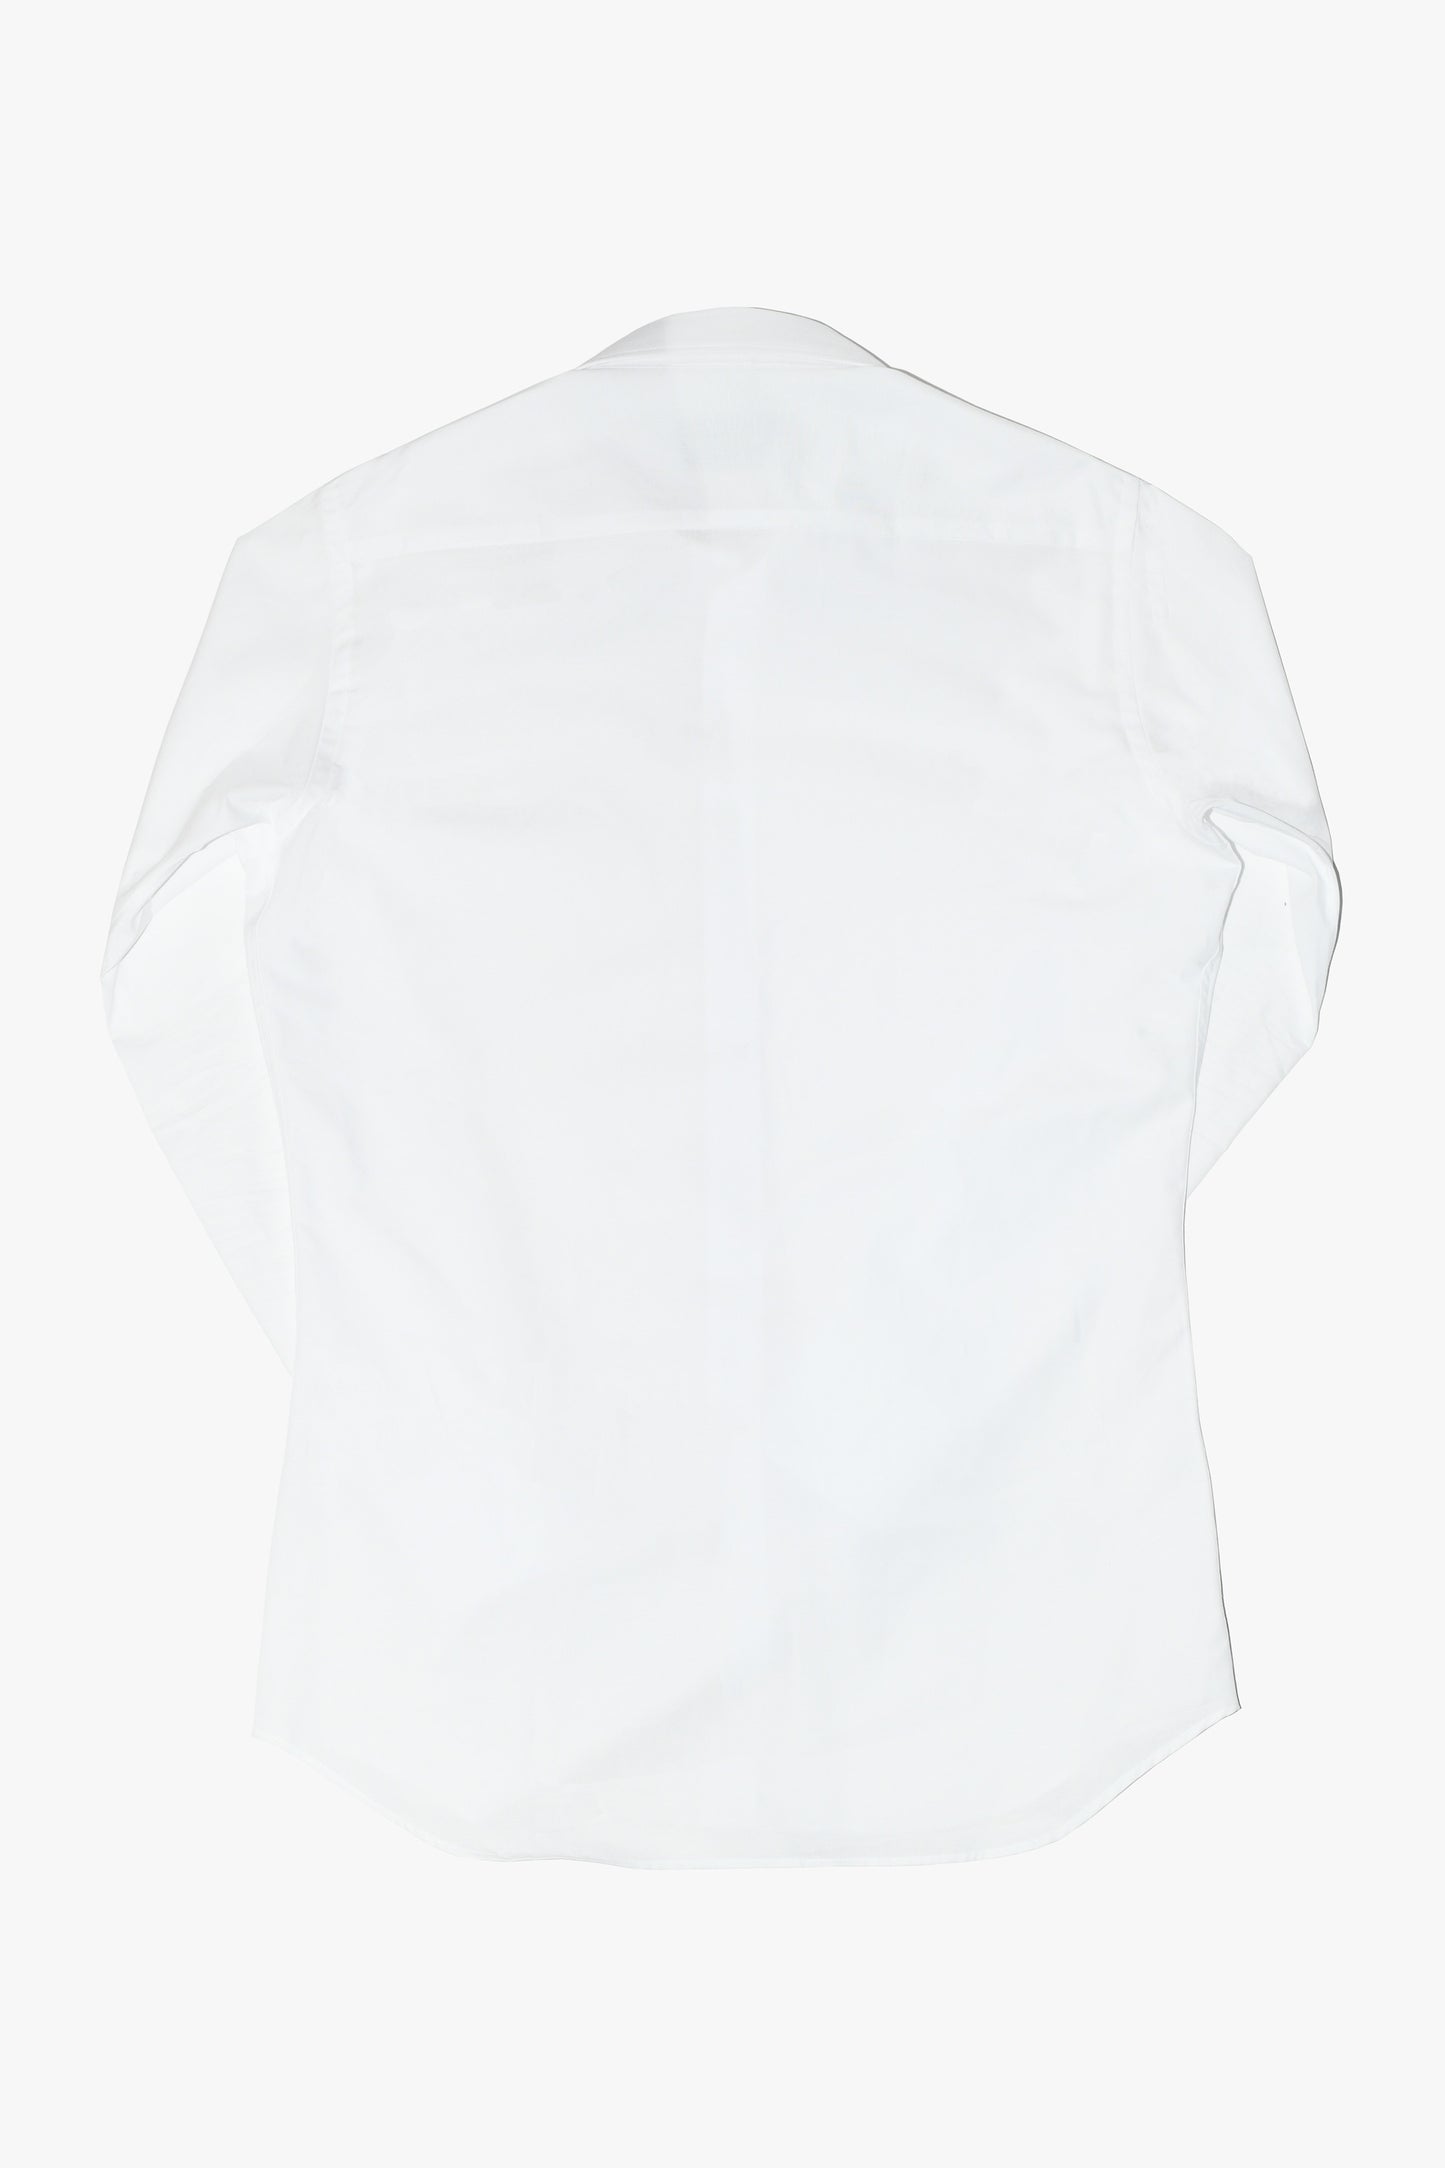 Camisa vestir MTO blanca cuello inglés largo